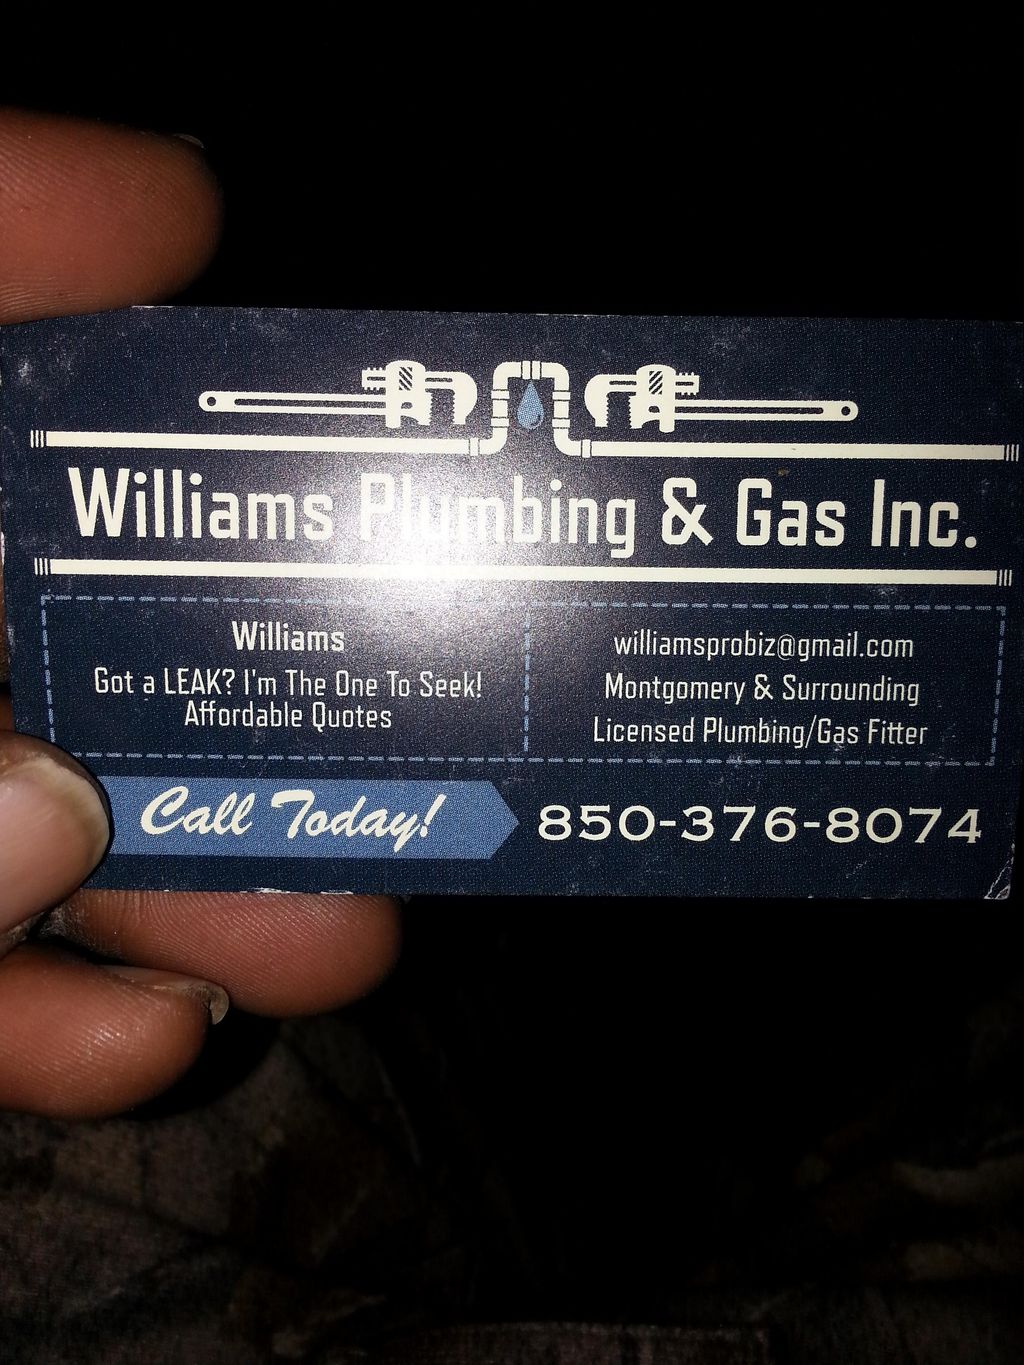 Williams Plumbing & Gas Inc.